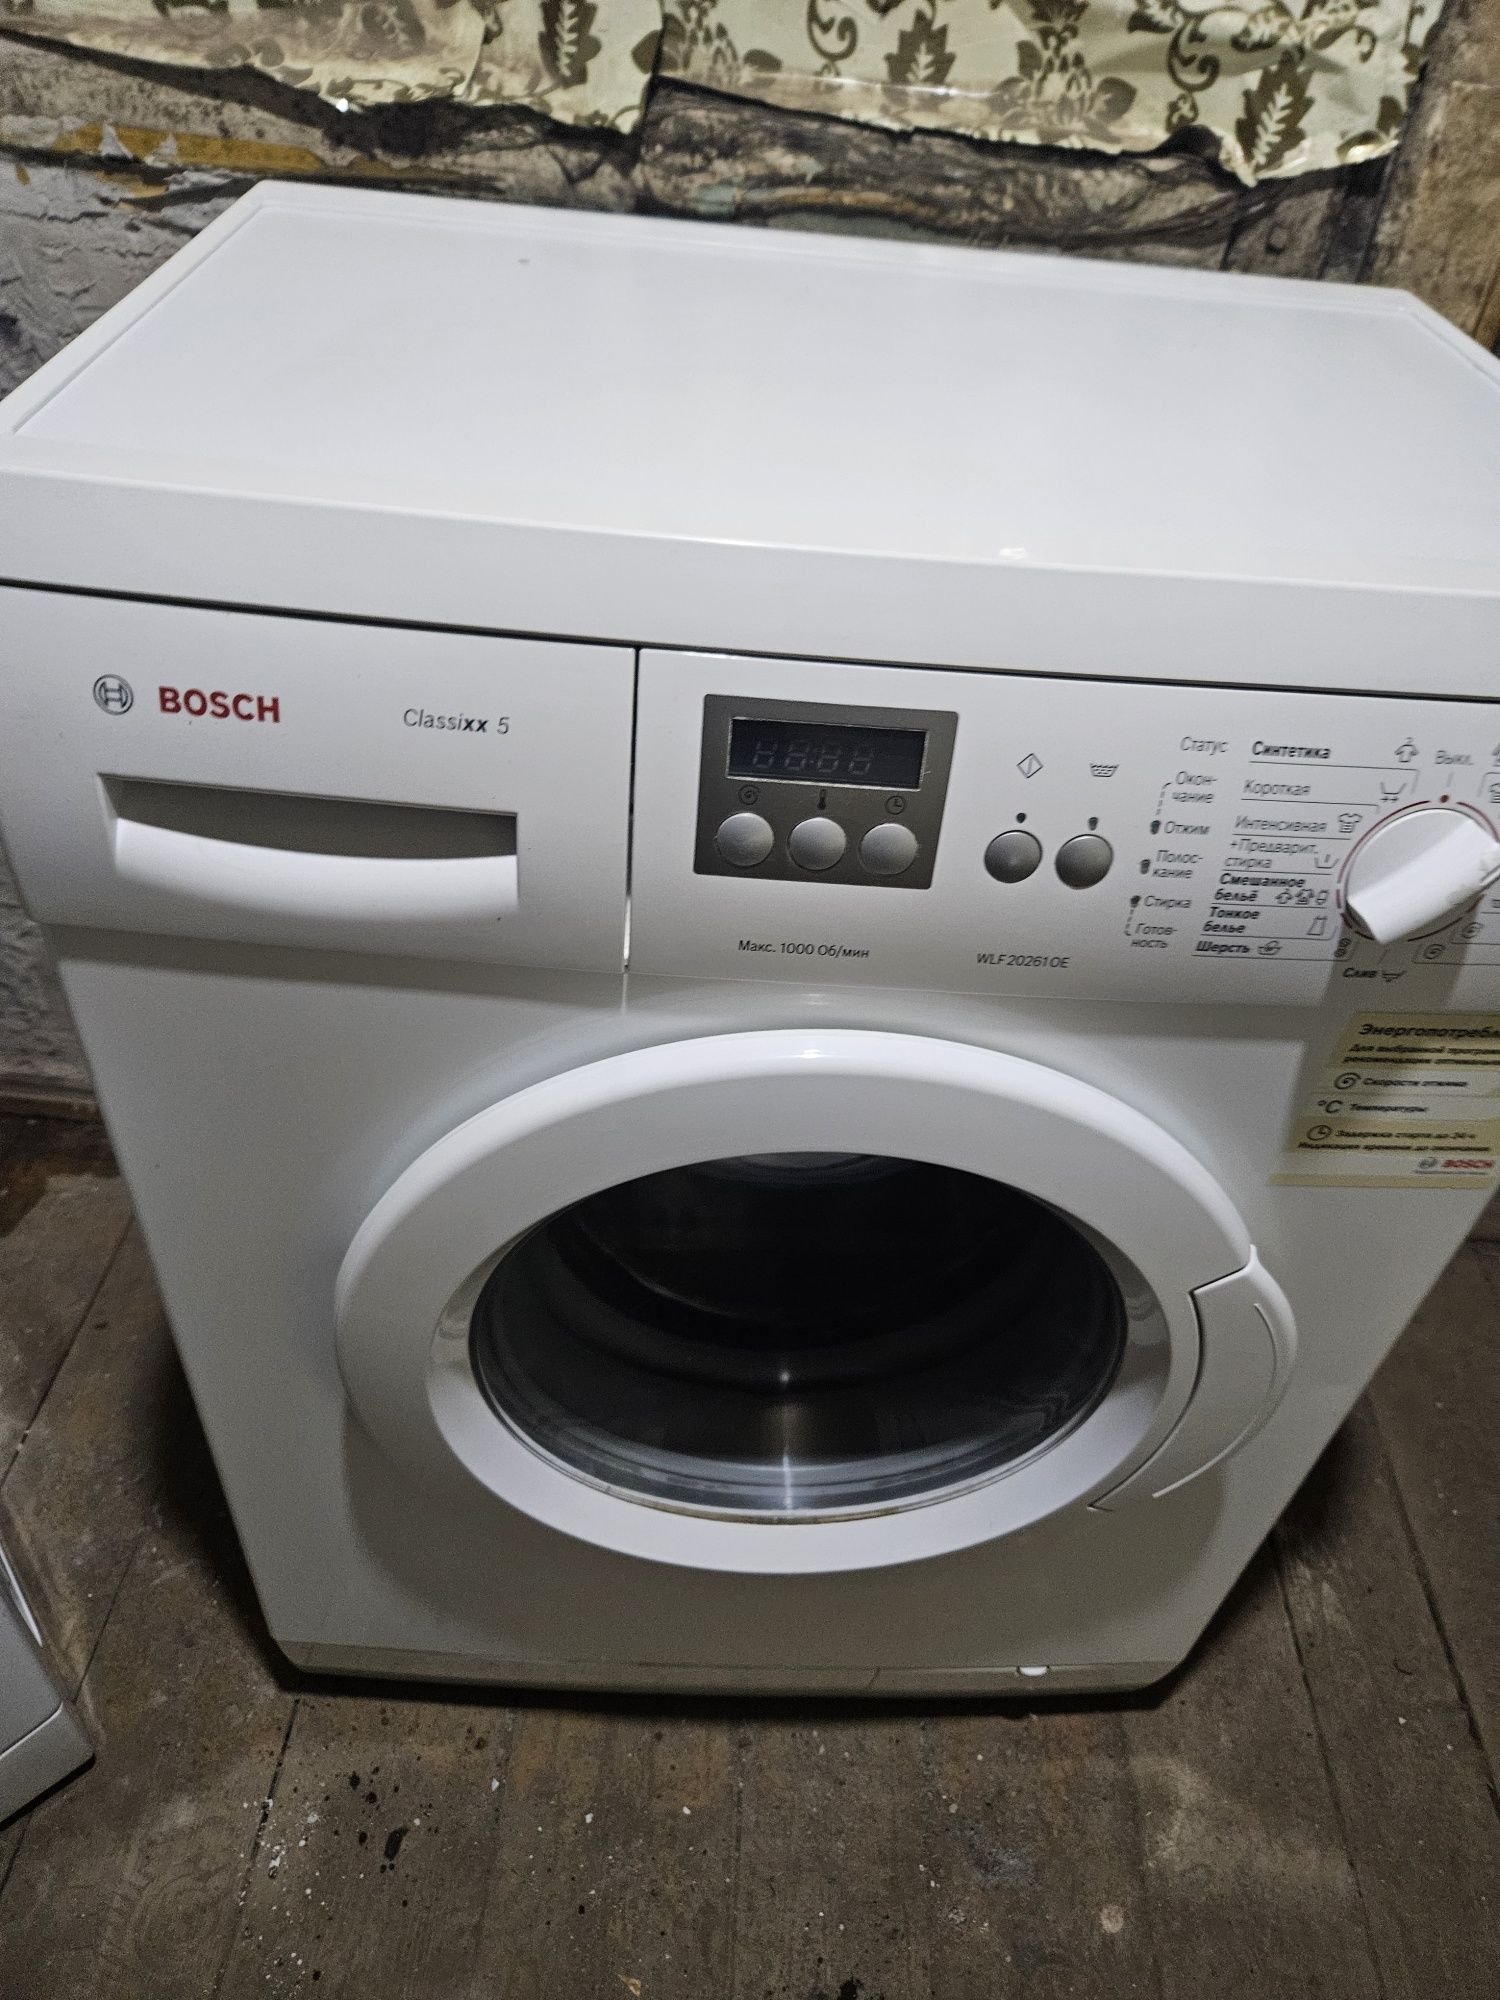 BOSCH 5кг качественный стиральная машина